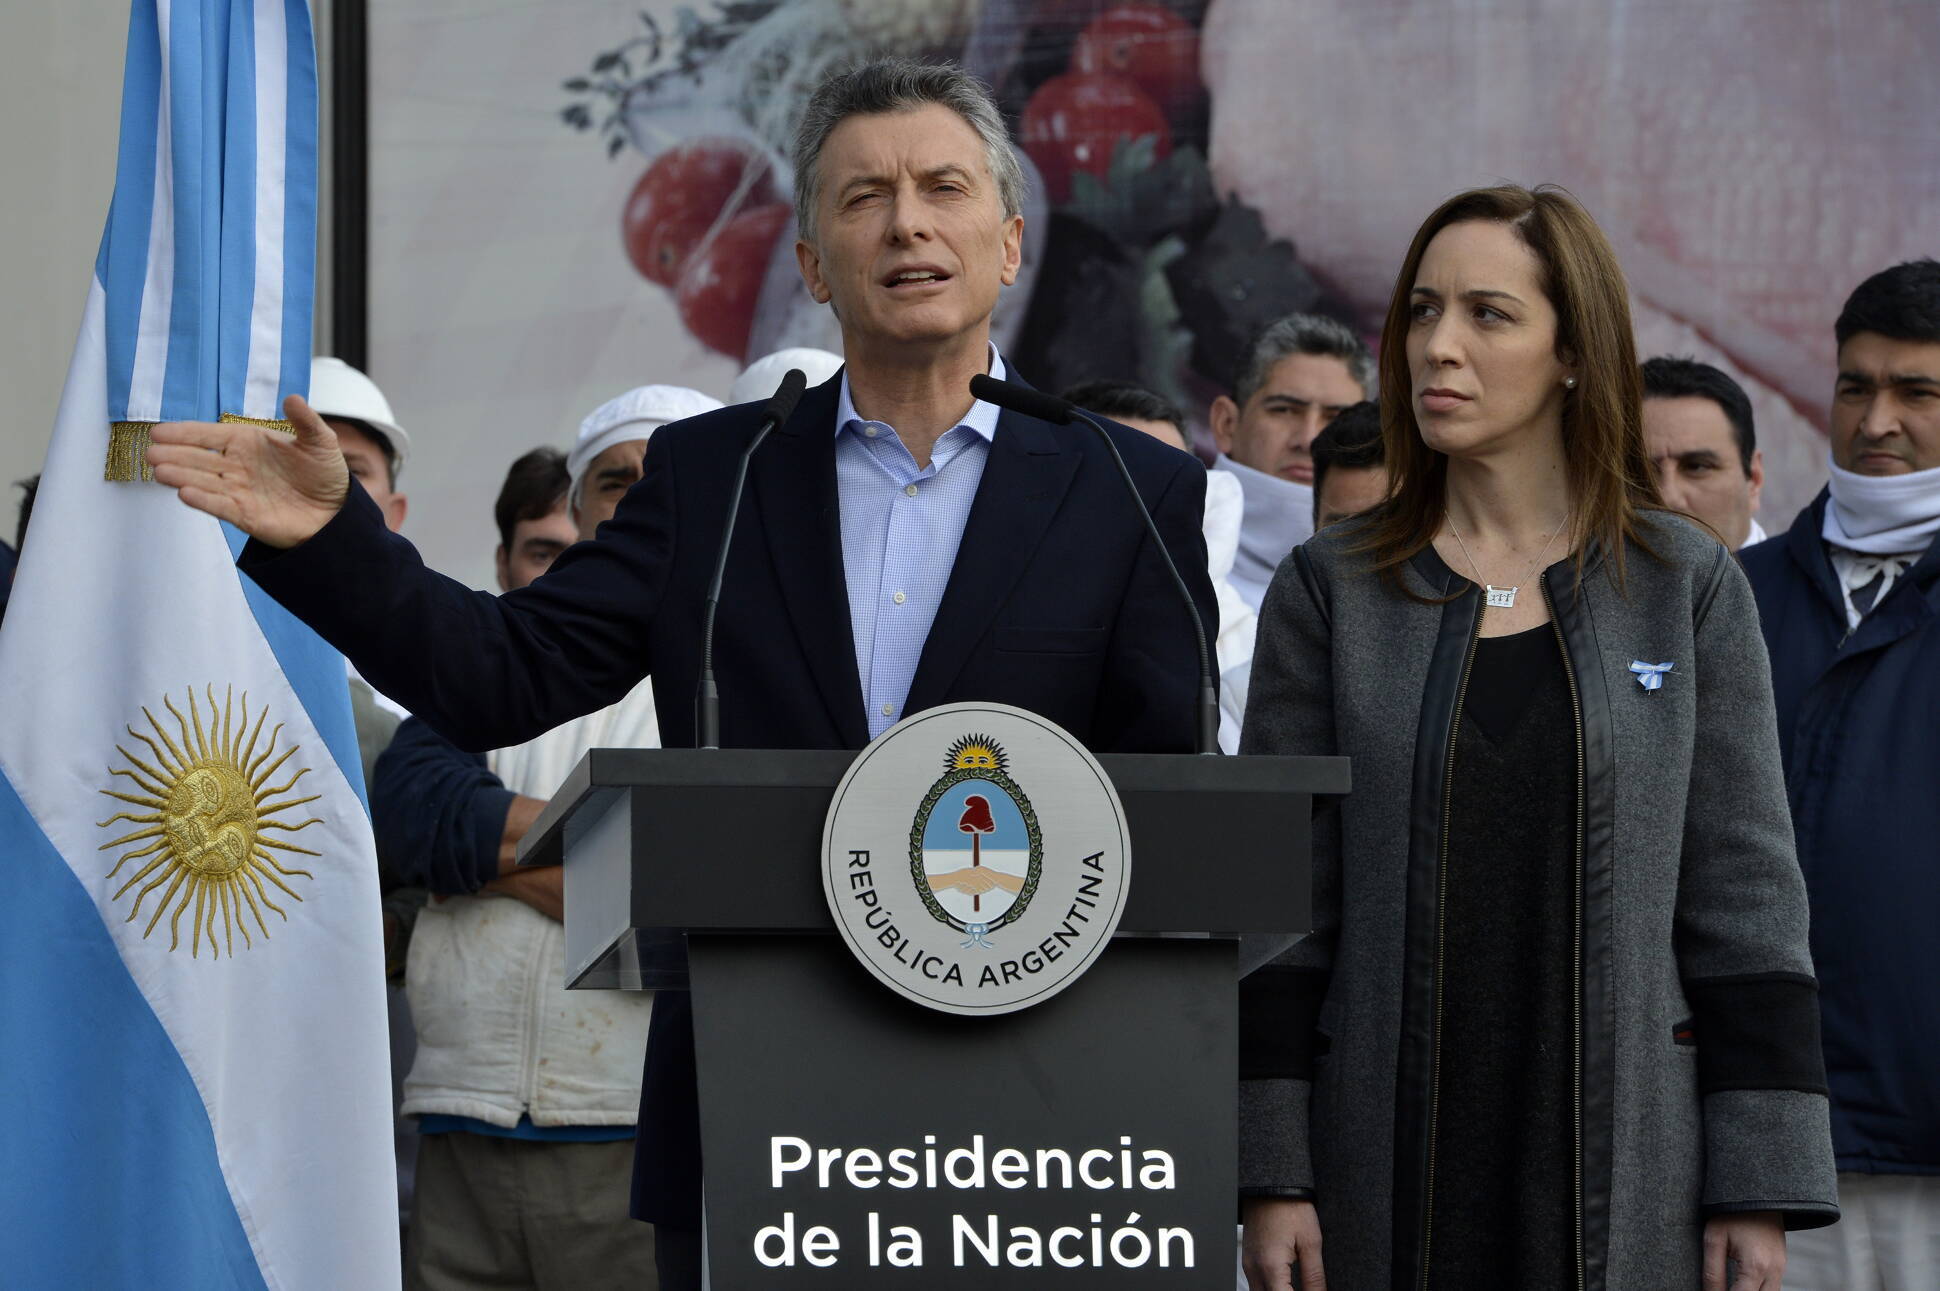 Es una ley contra los argentinos, afirmó Macri al anunciar que vetará la ley de emergencia ocupacional